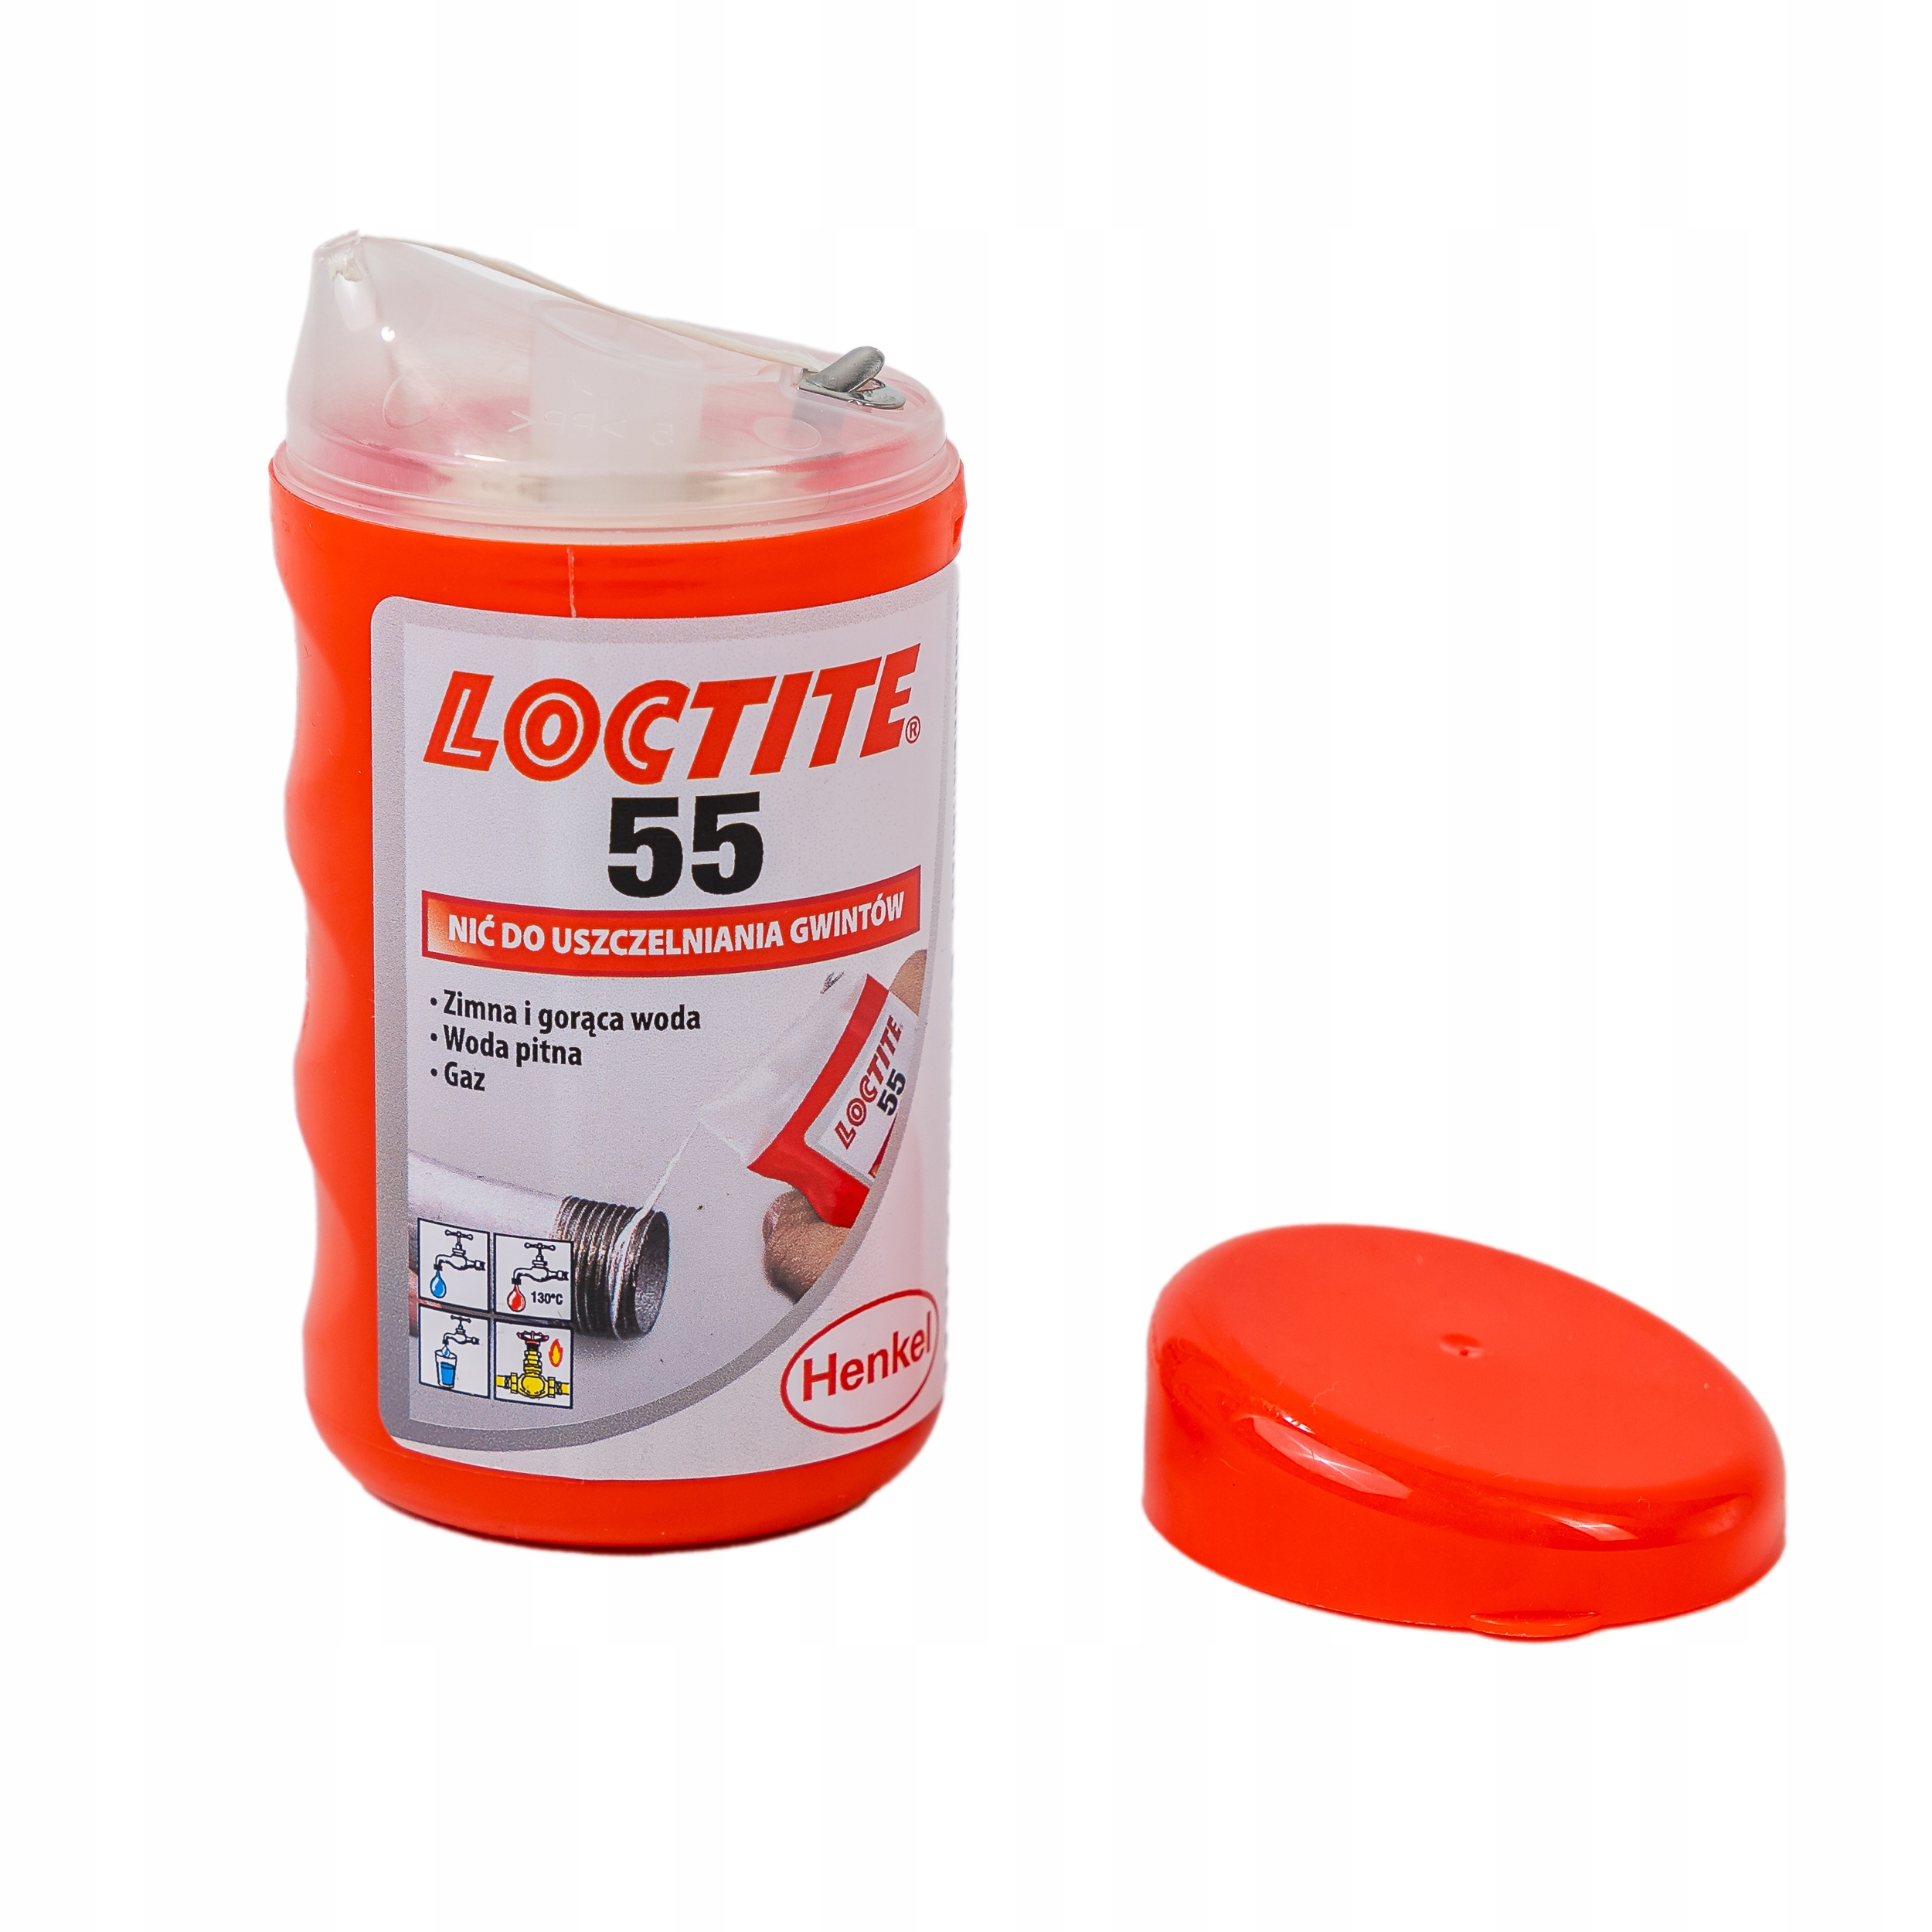 Loctite 55 різьбовий герметик 160 mb Код виробника Loctite 55 різьбовий герметик